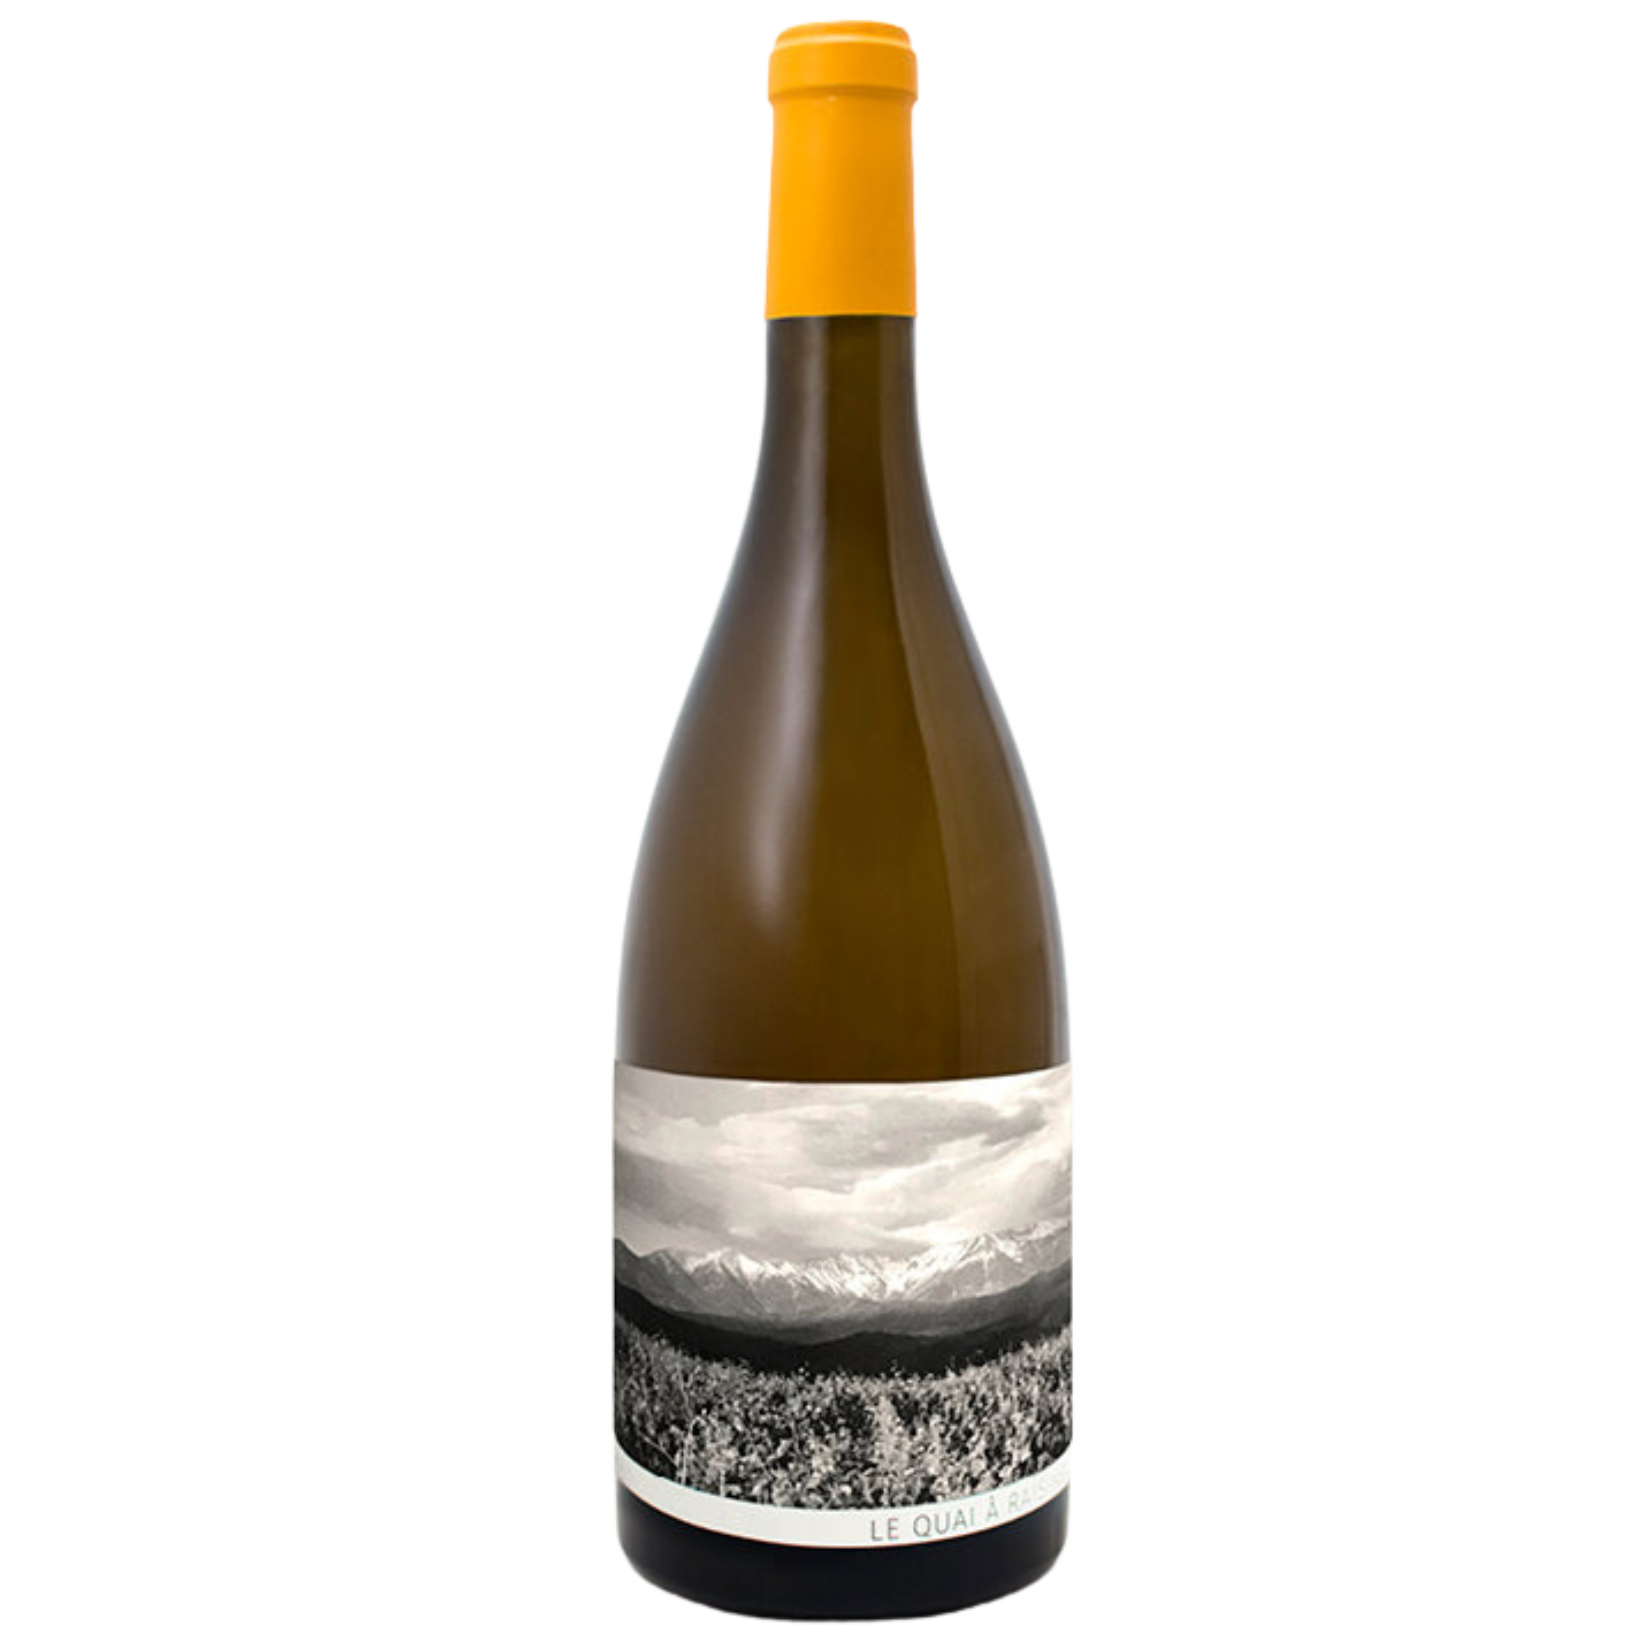 DOMAINE BERRY ALTHOFF - Embruns Vin blanc 